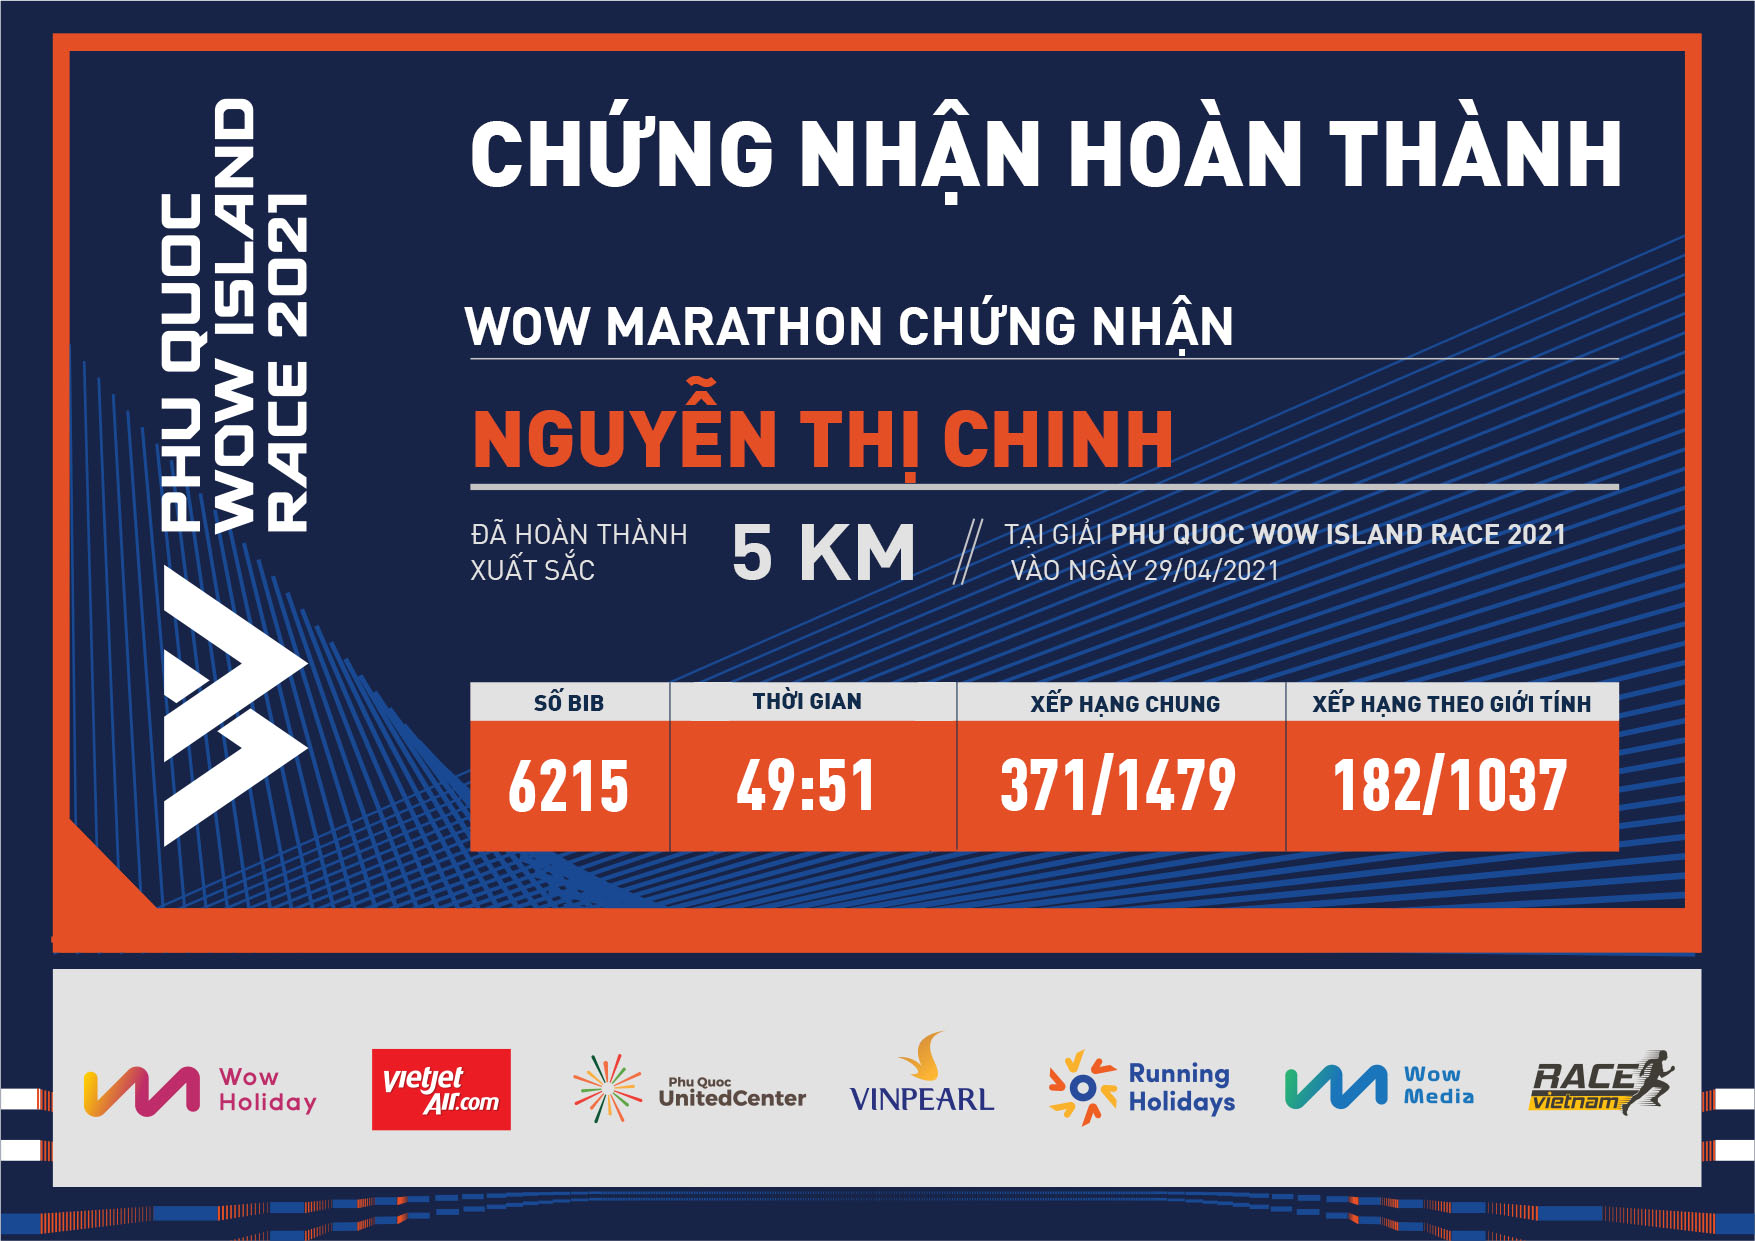 6215 - Nguyễn Thị Chinh